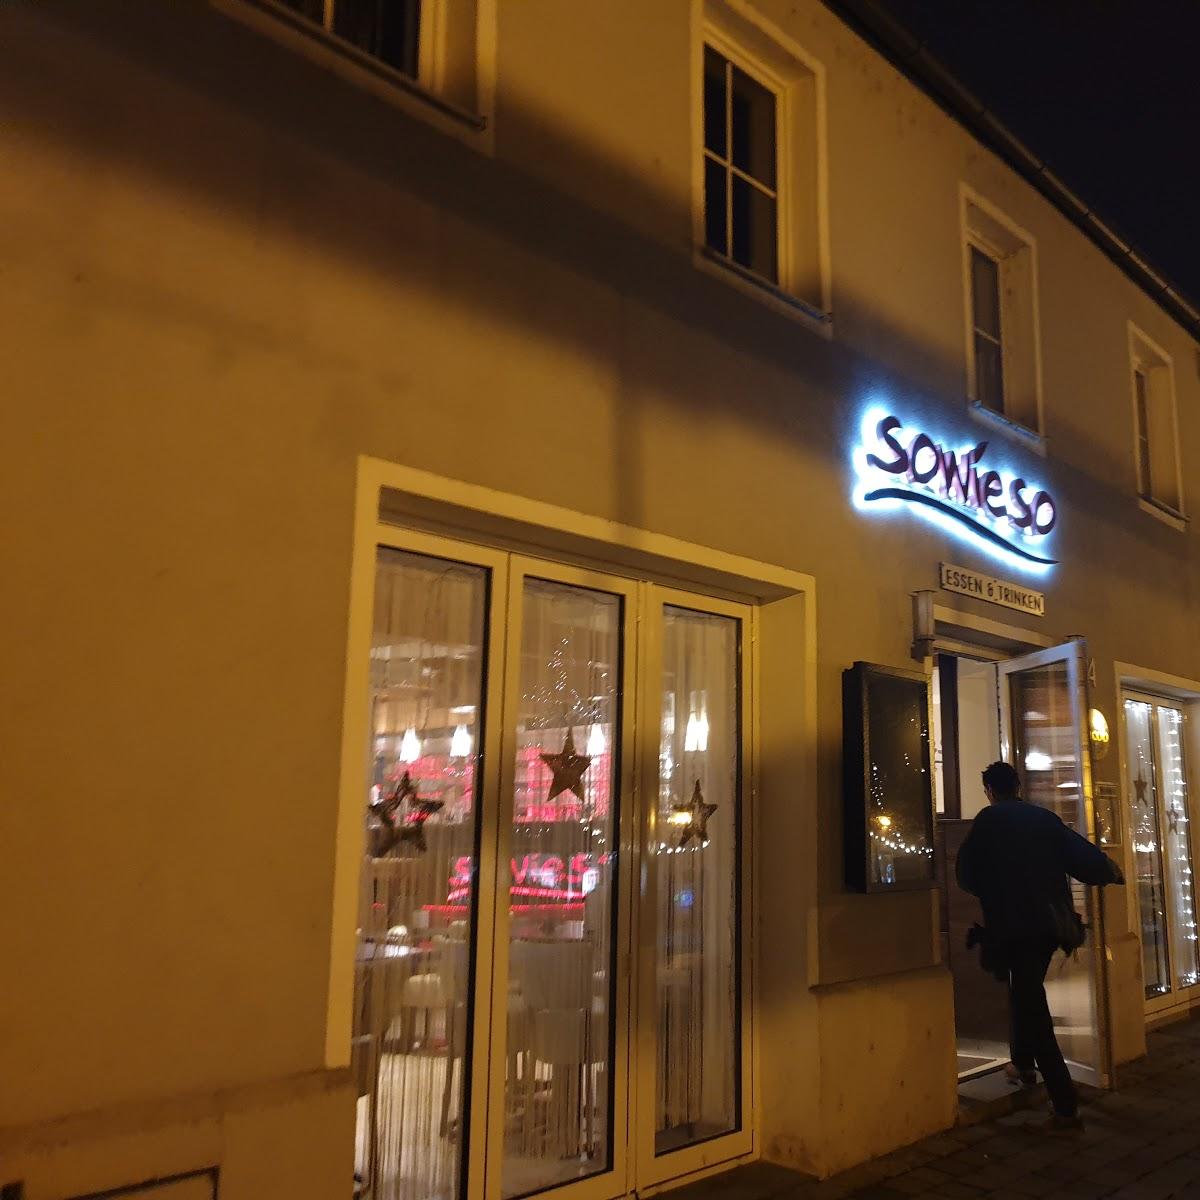 Restaurant "SOWIESO Essen & Trinken" in  Burglengenfeld